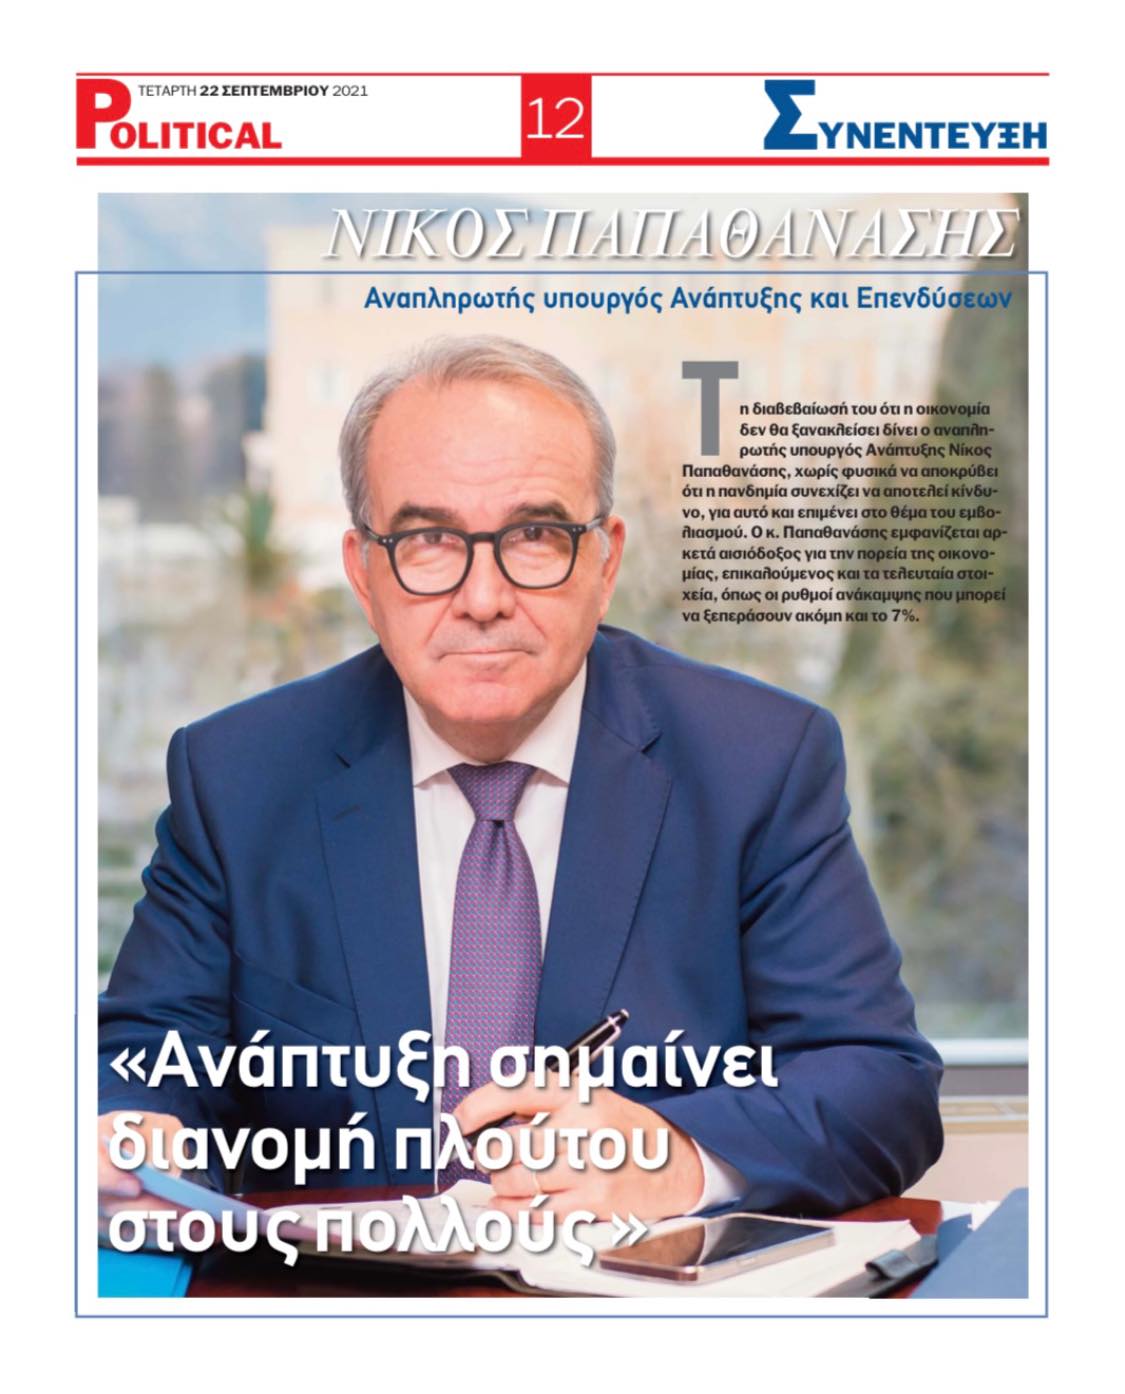 Ο Νίκος Παπαθανάσης, Αναπληρωτής Υπουργός Ανάπτυξης και Επενδύσεων στην Political.gr